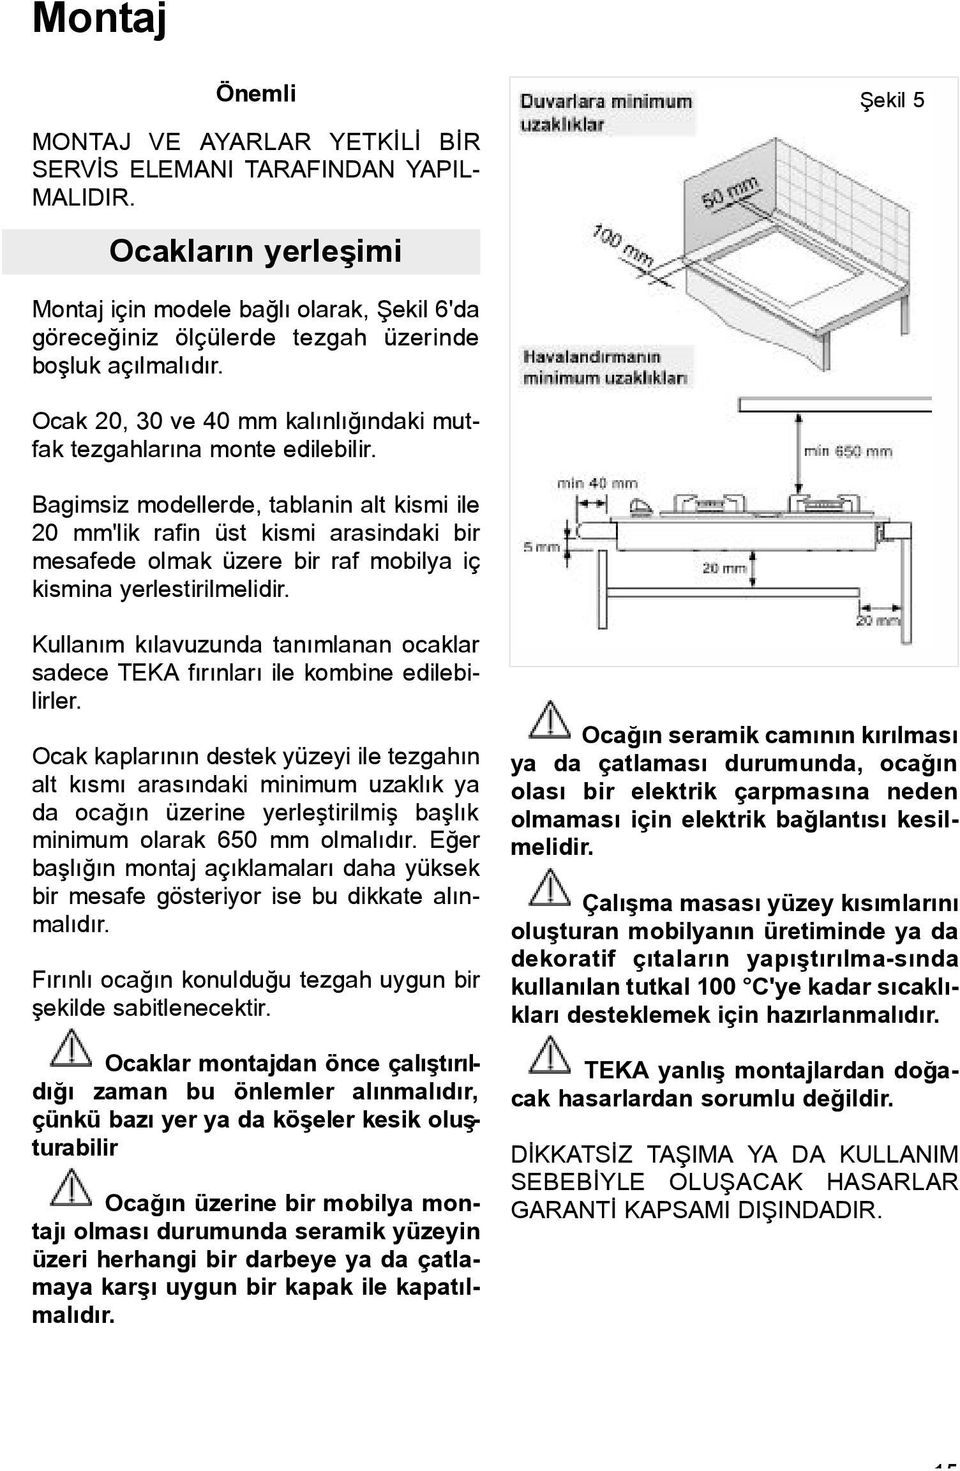 Ocak 20, 30 ve 40 mm kalýnlýðýndaki mutfak tezgahlarýna monte edilebilir.